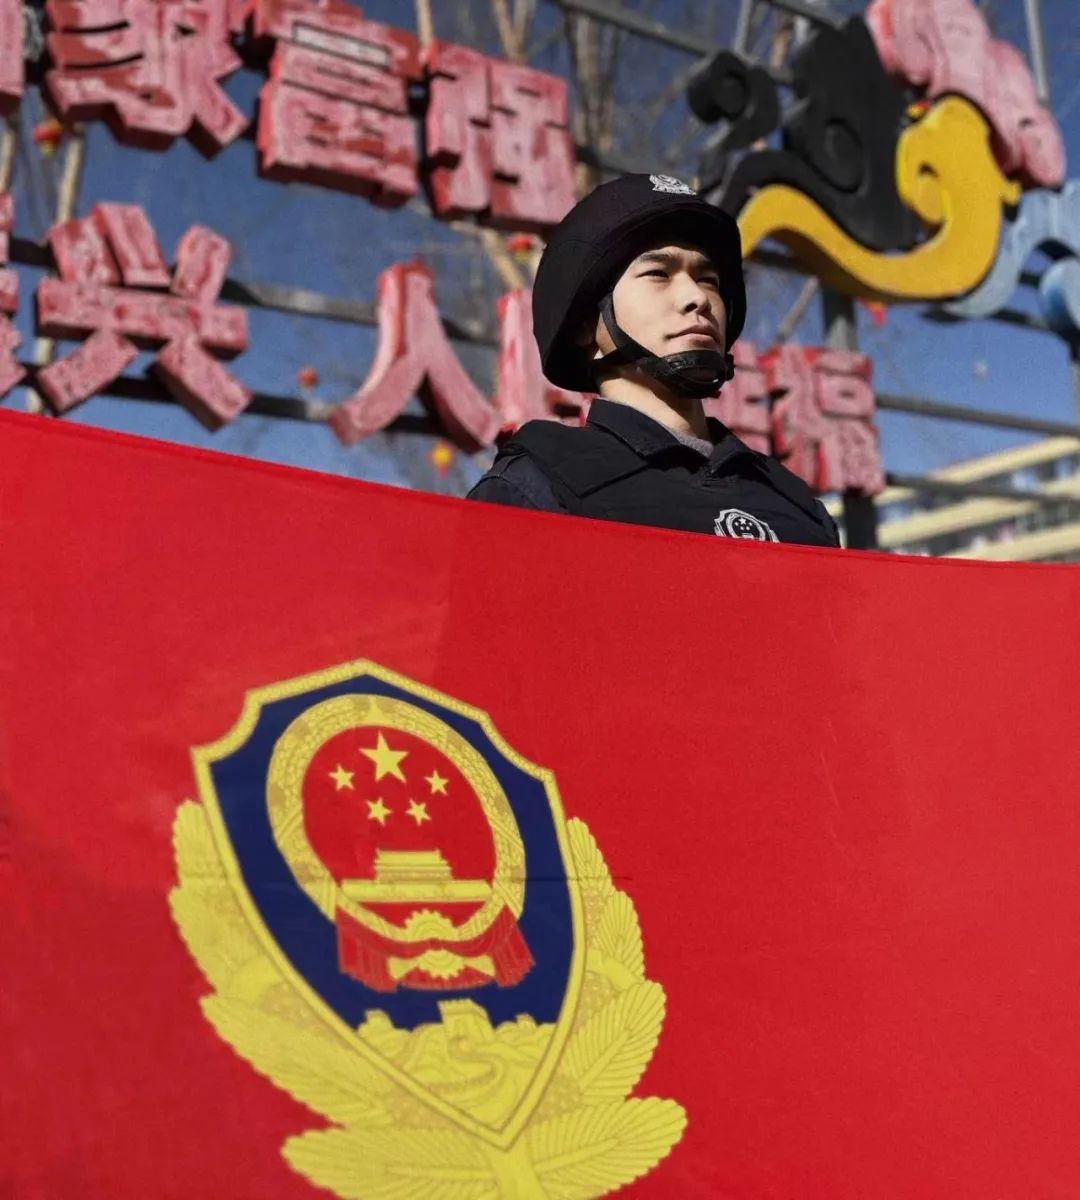 中国人民警察警旗头像图片